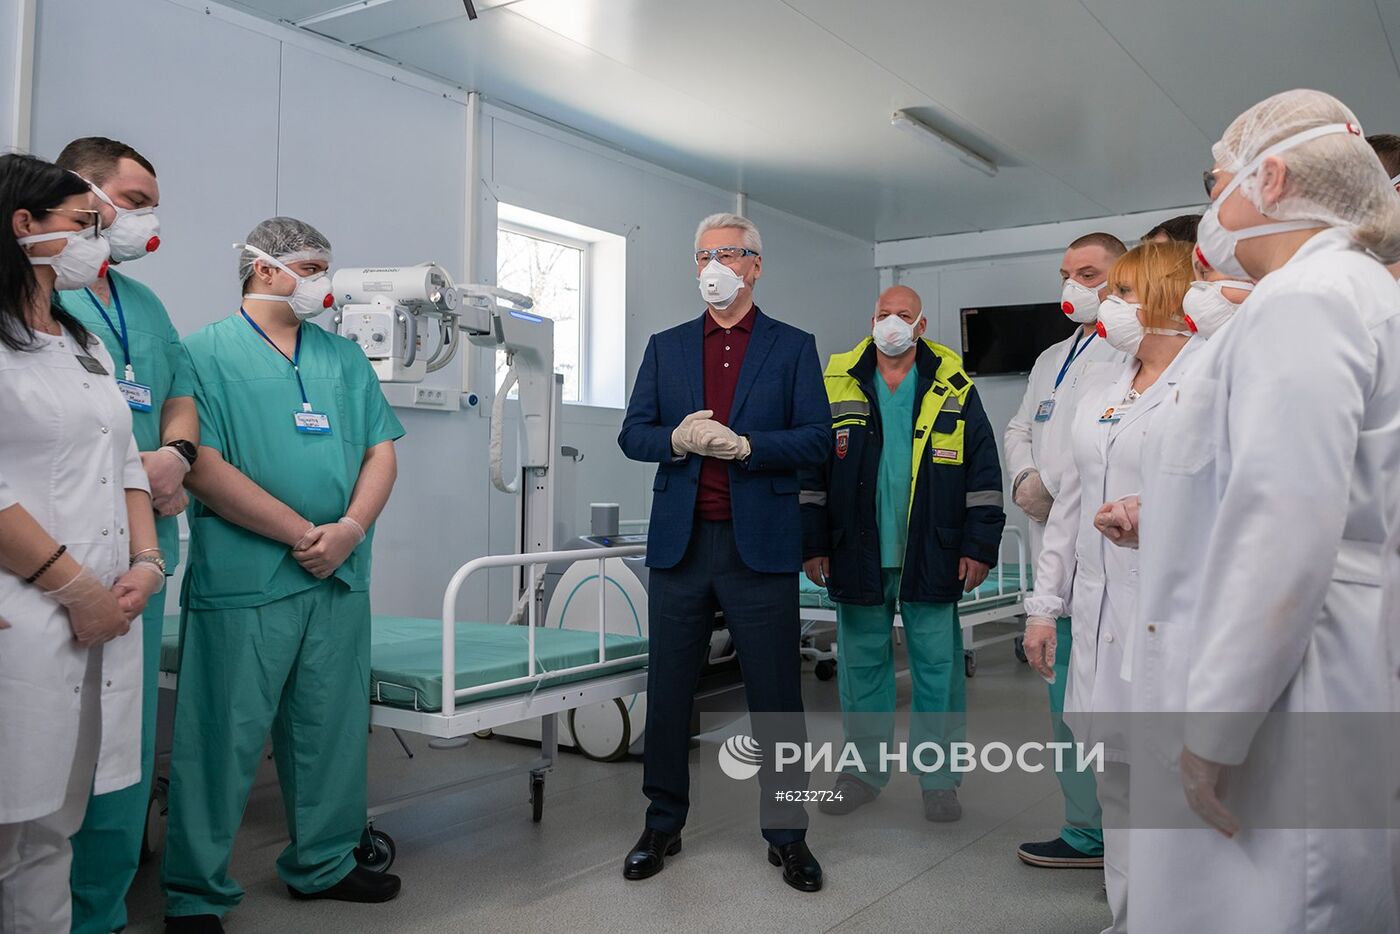 Стационар для долечивания пациентов с коронавирусом построен на базе НИИ Склифосовского